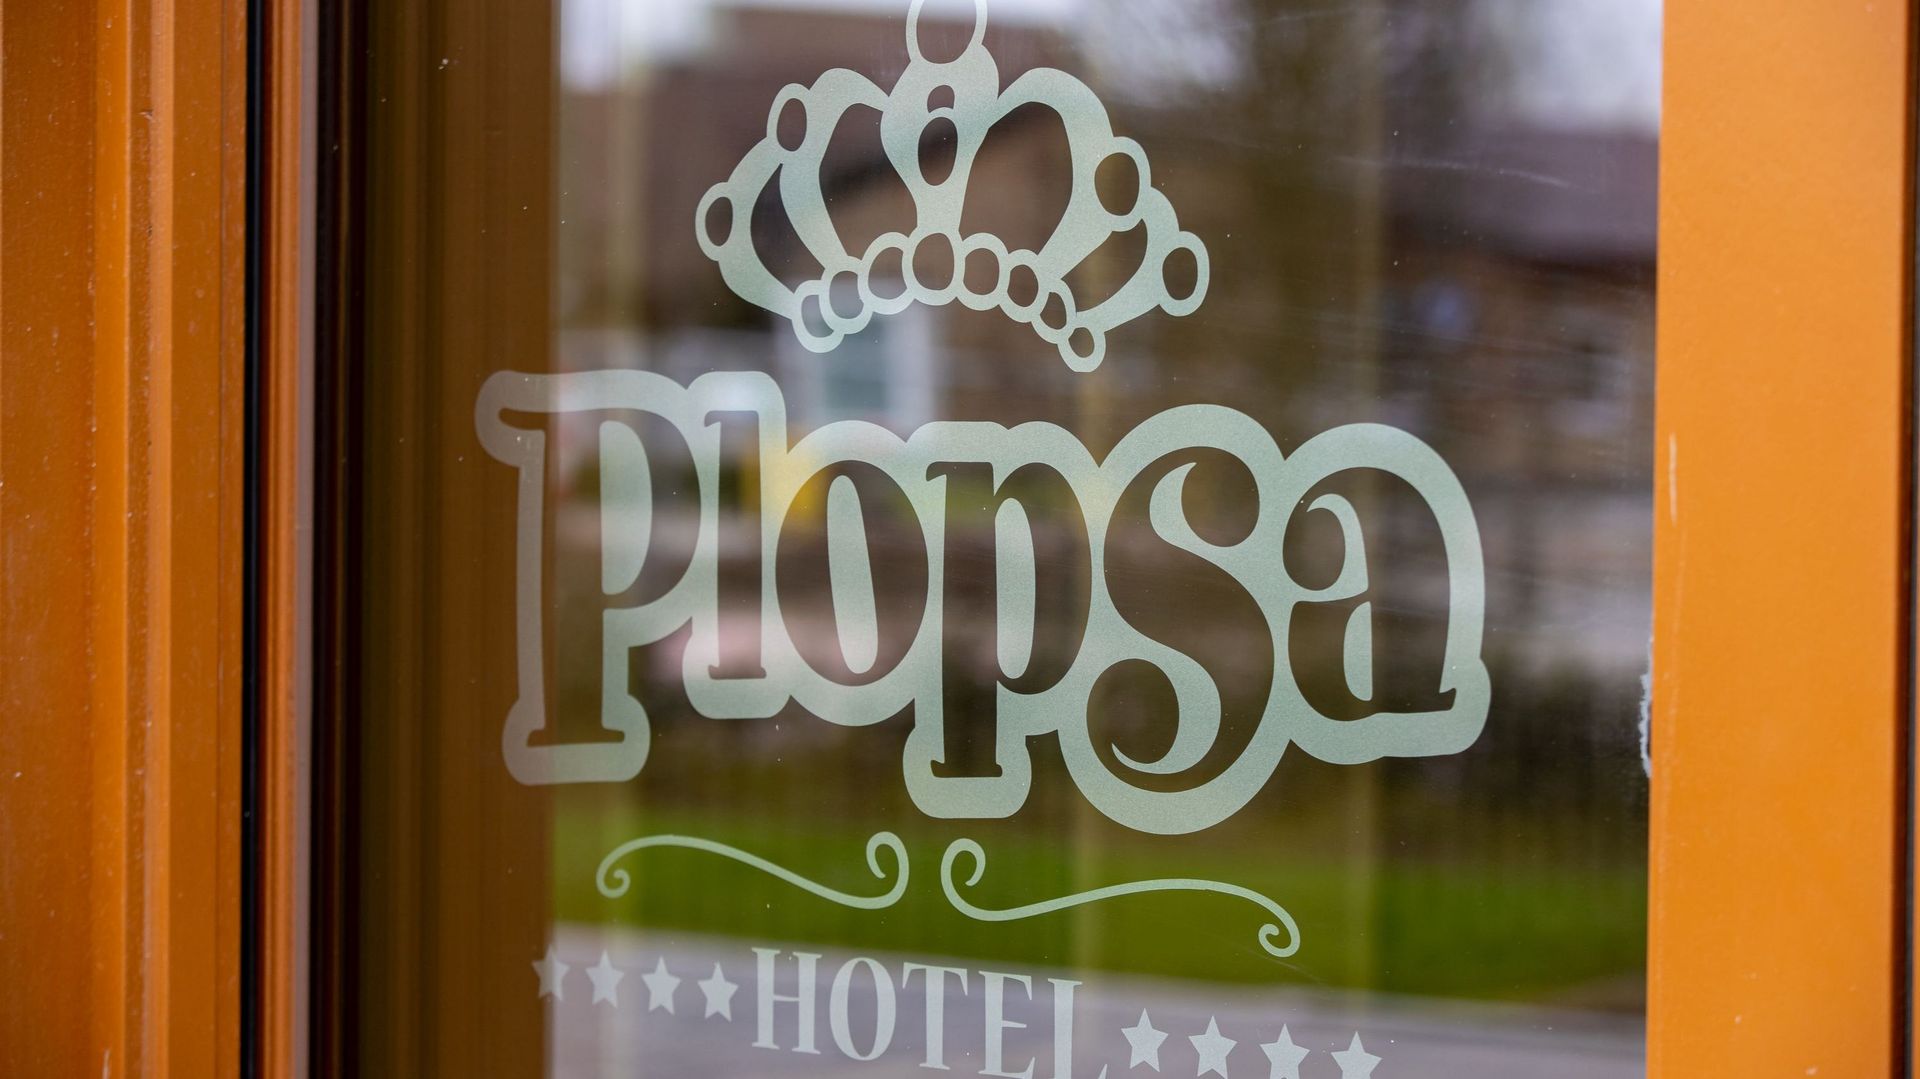 Le logo Plopsa sur la porte de l'hôtel du groupe à La Panne, en Belgique.